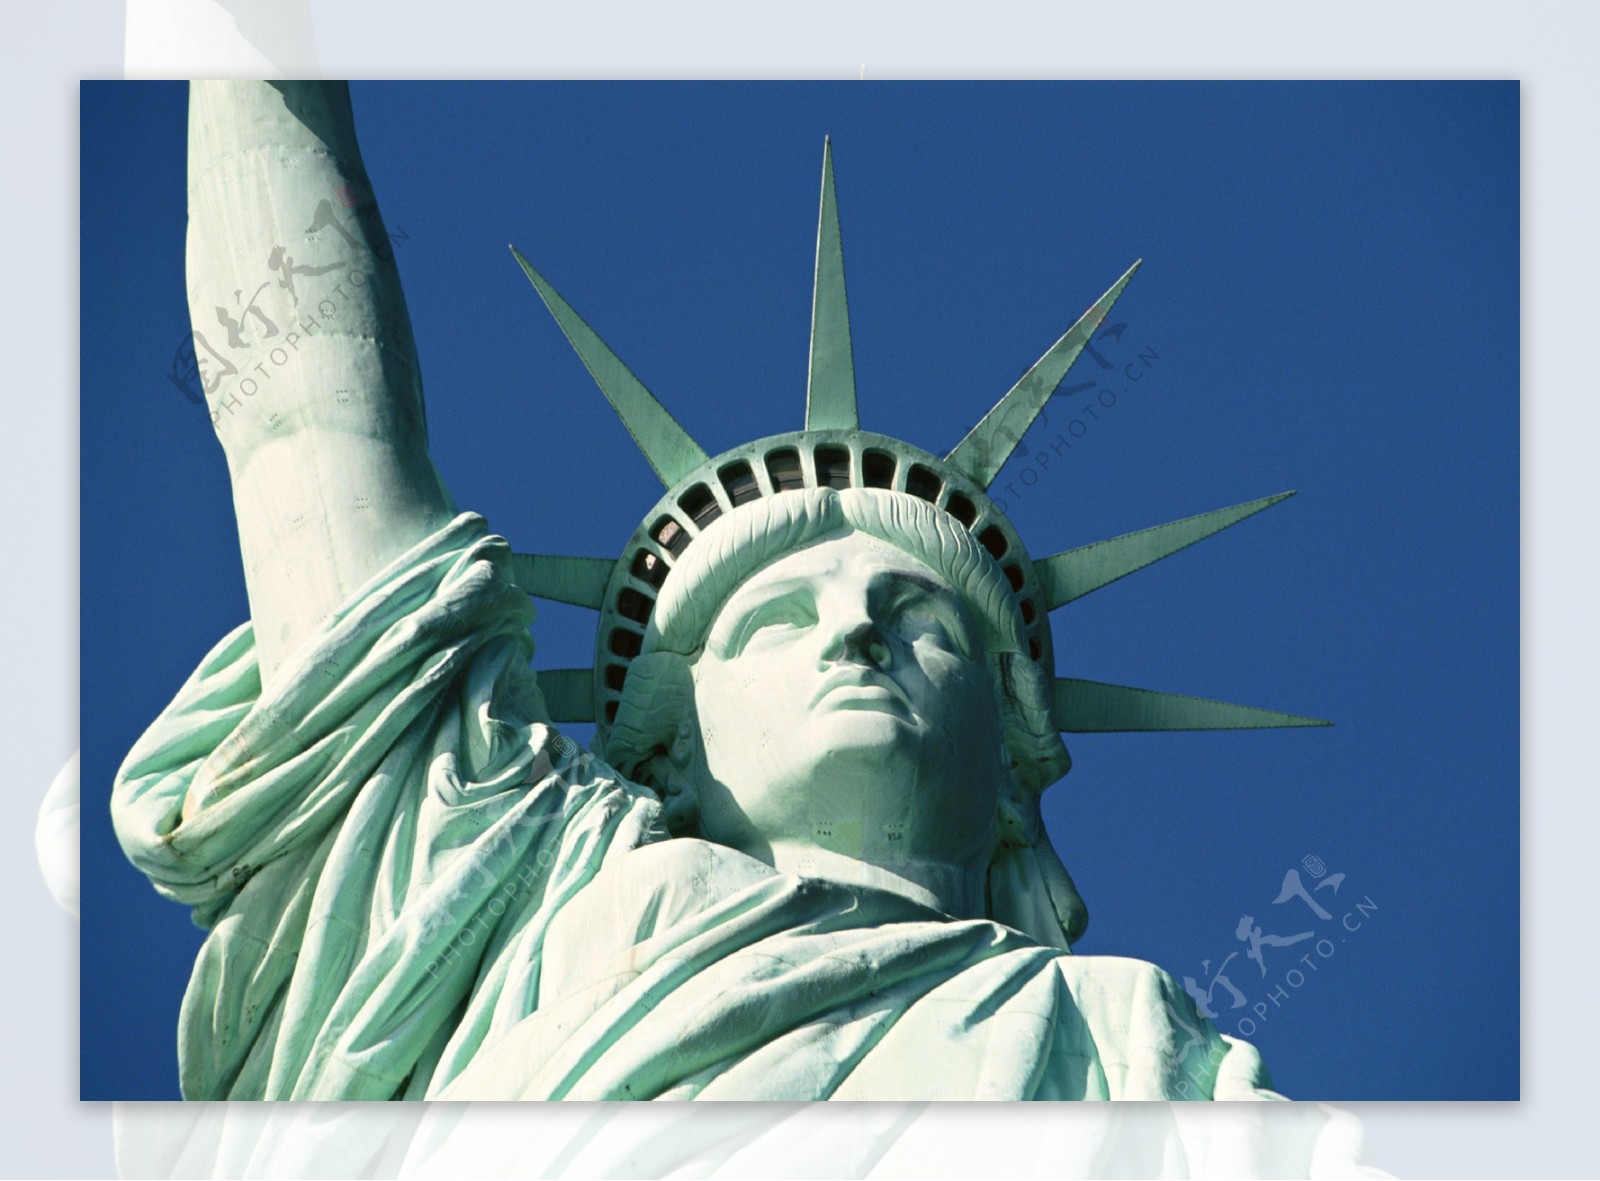 美国自由女神像28